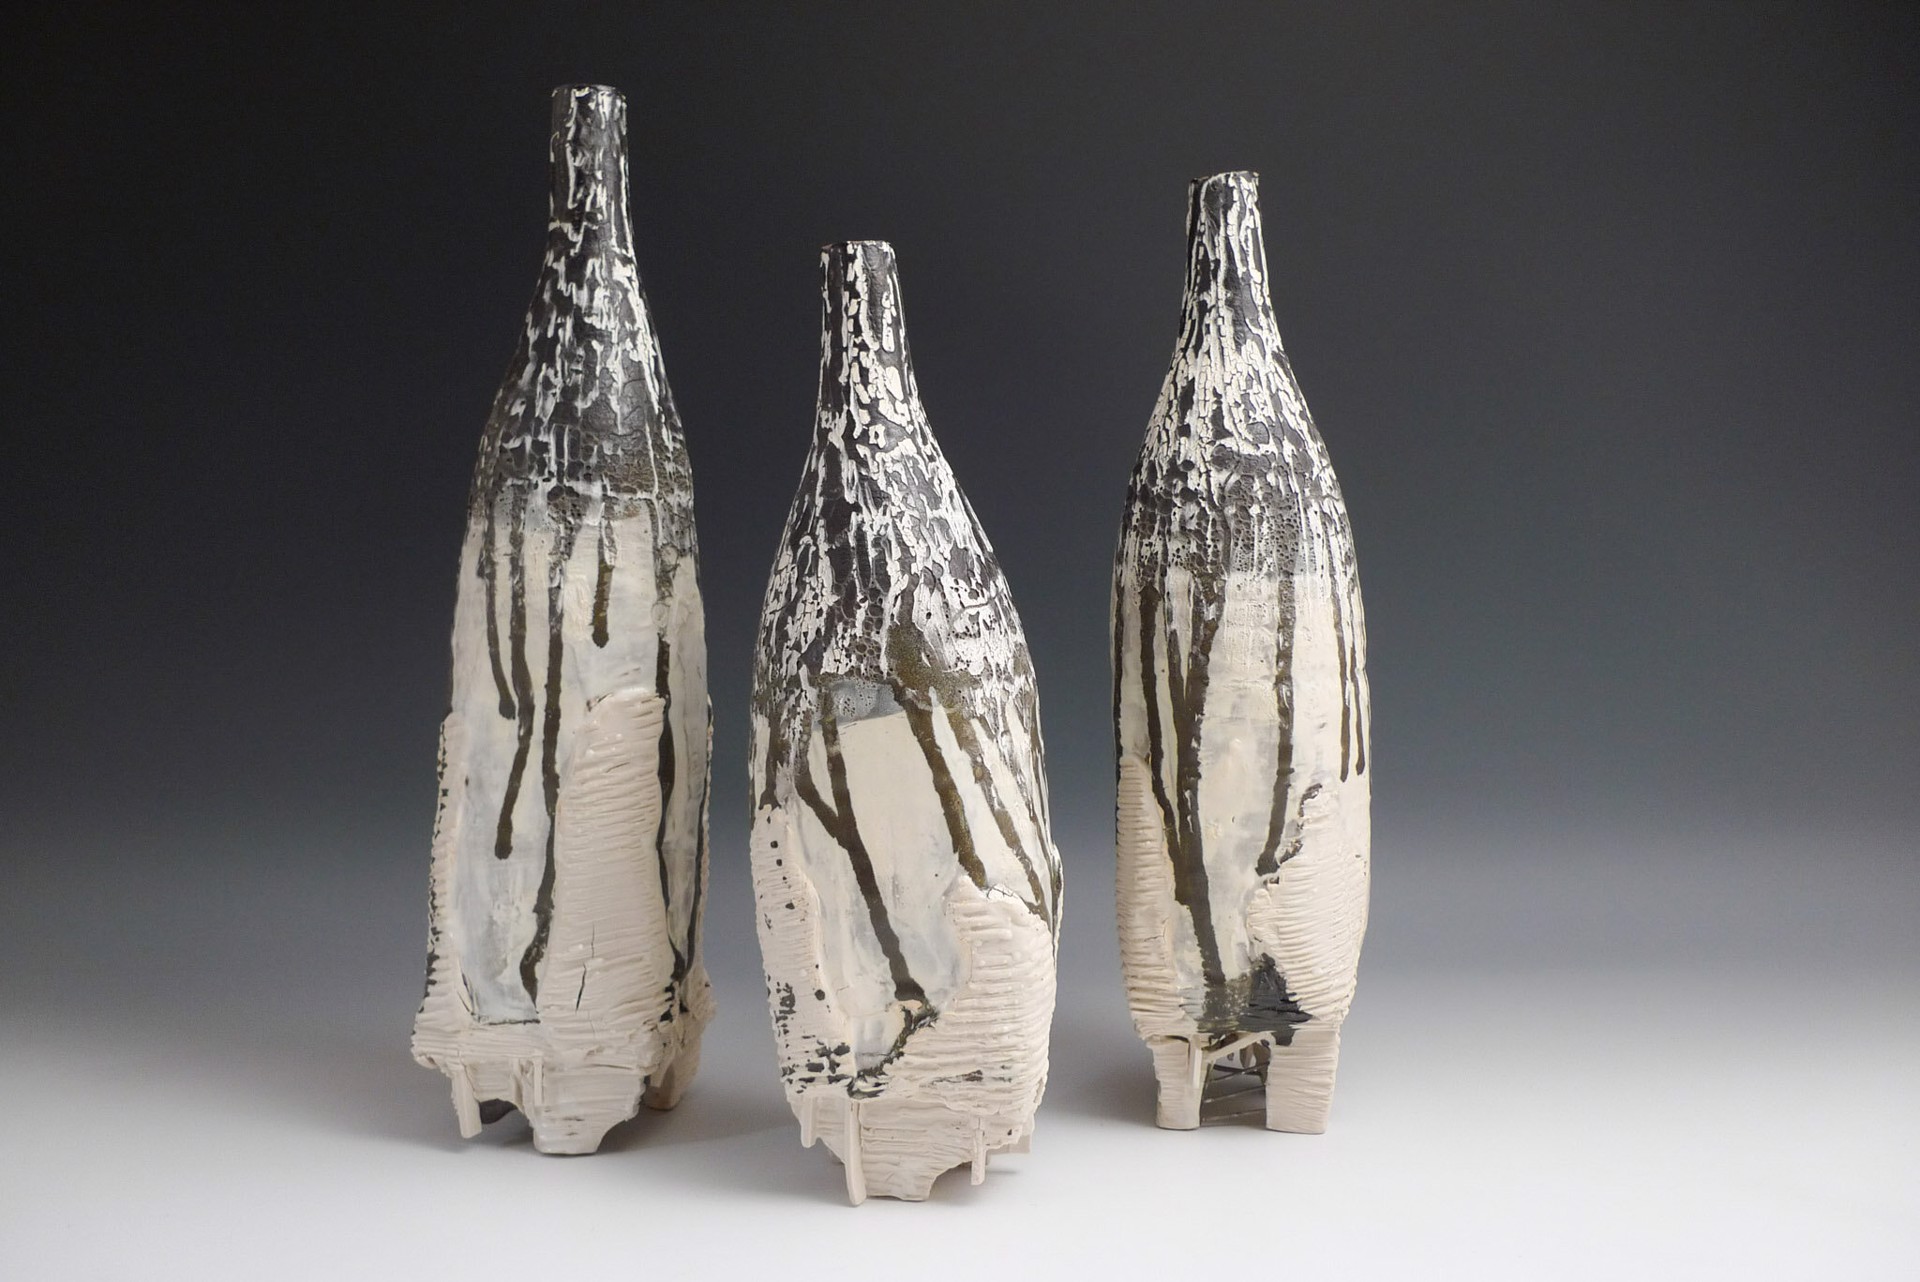 Mountain Bottles (set of 3) by Ani Kasten